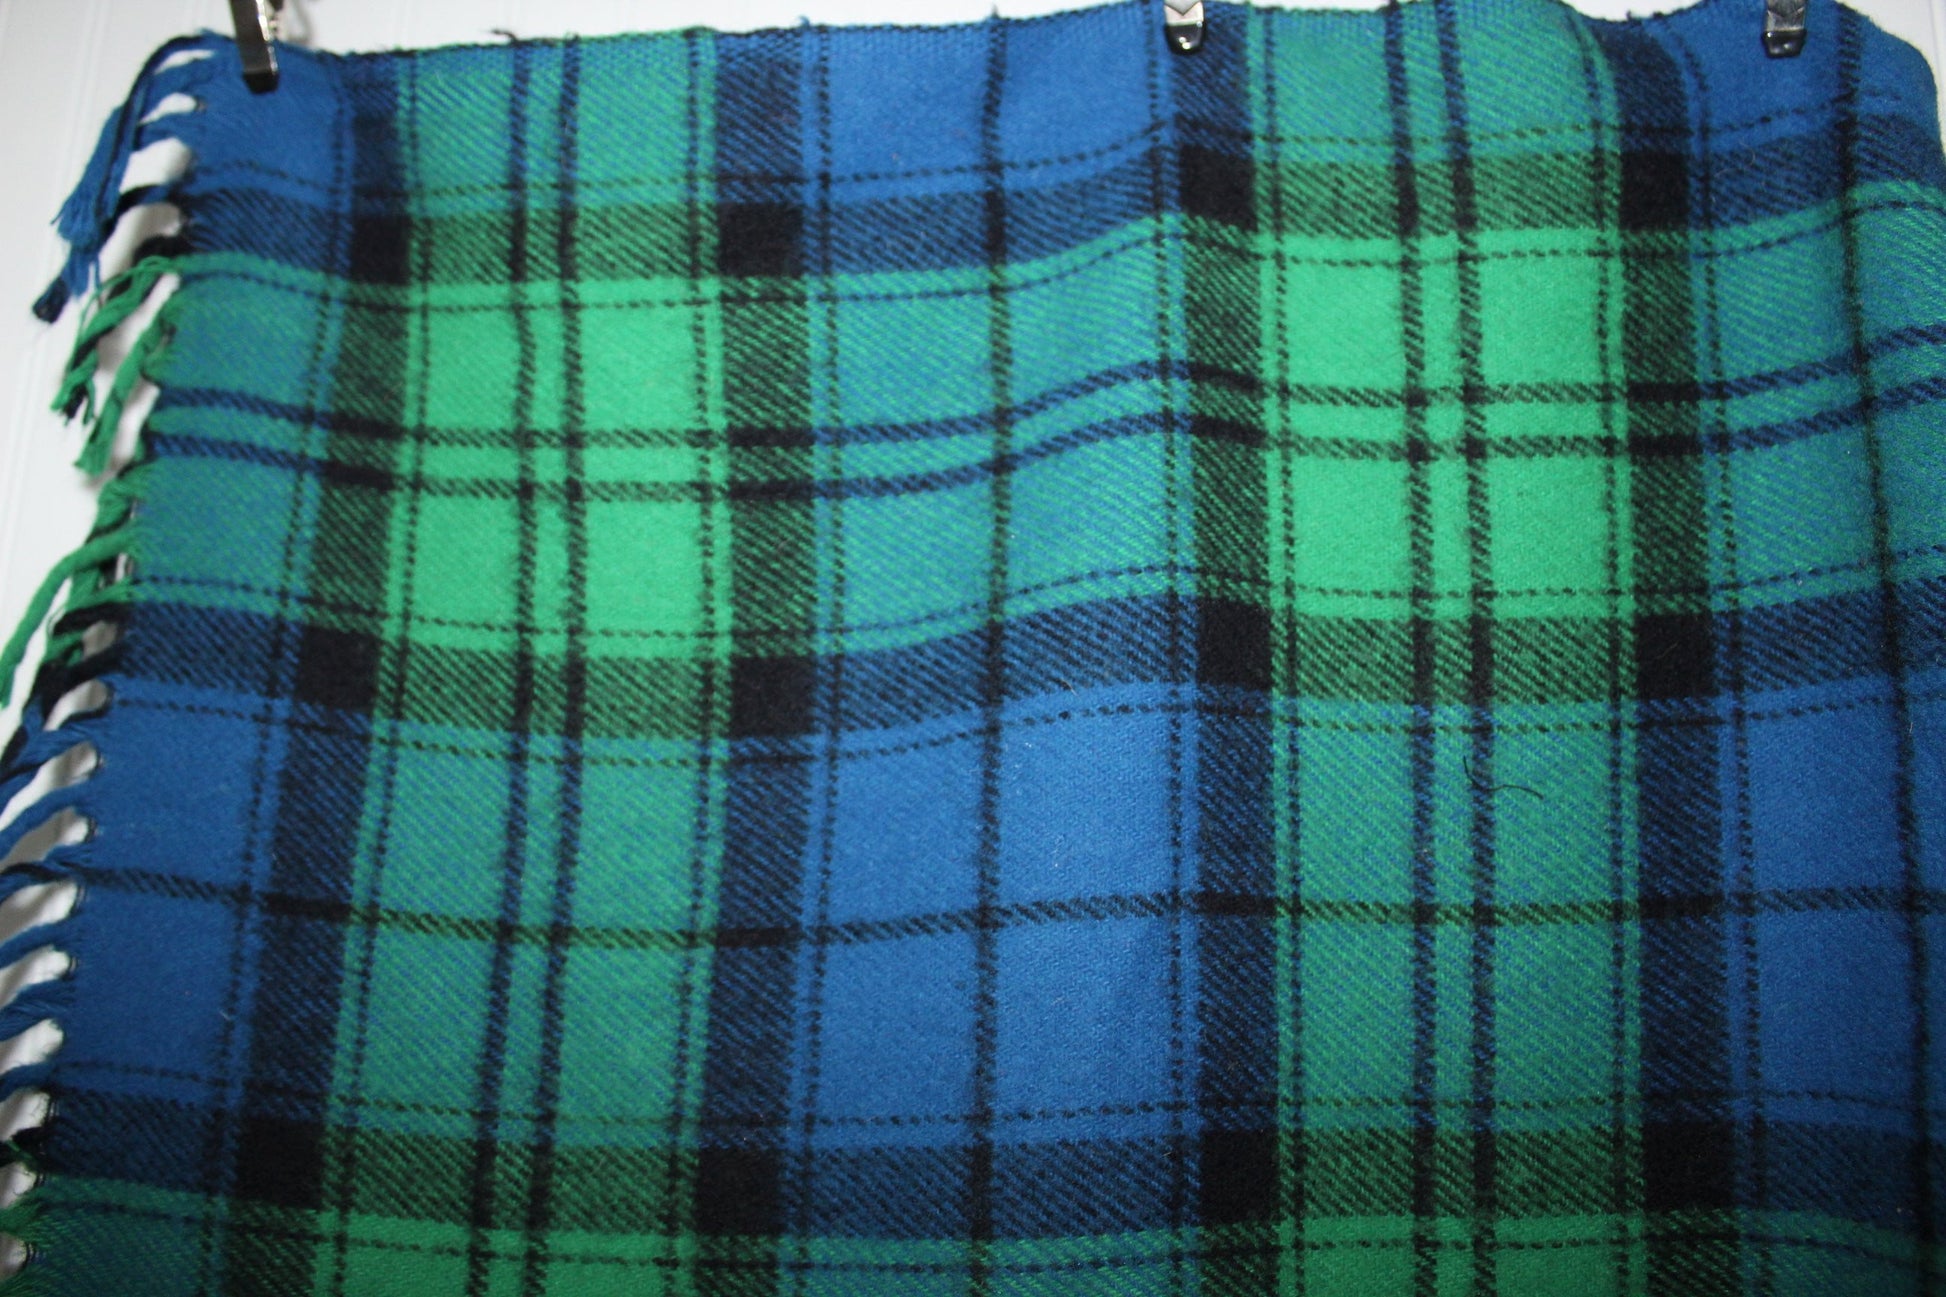 Wool Throw Blue Green Tartan Plaid Fringed Ends 65" X 53" warm